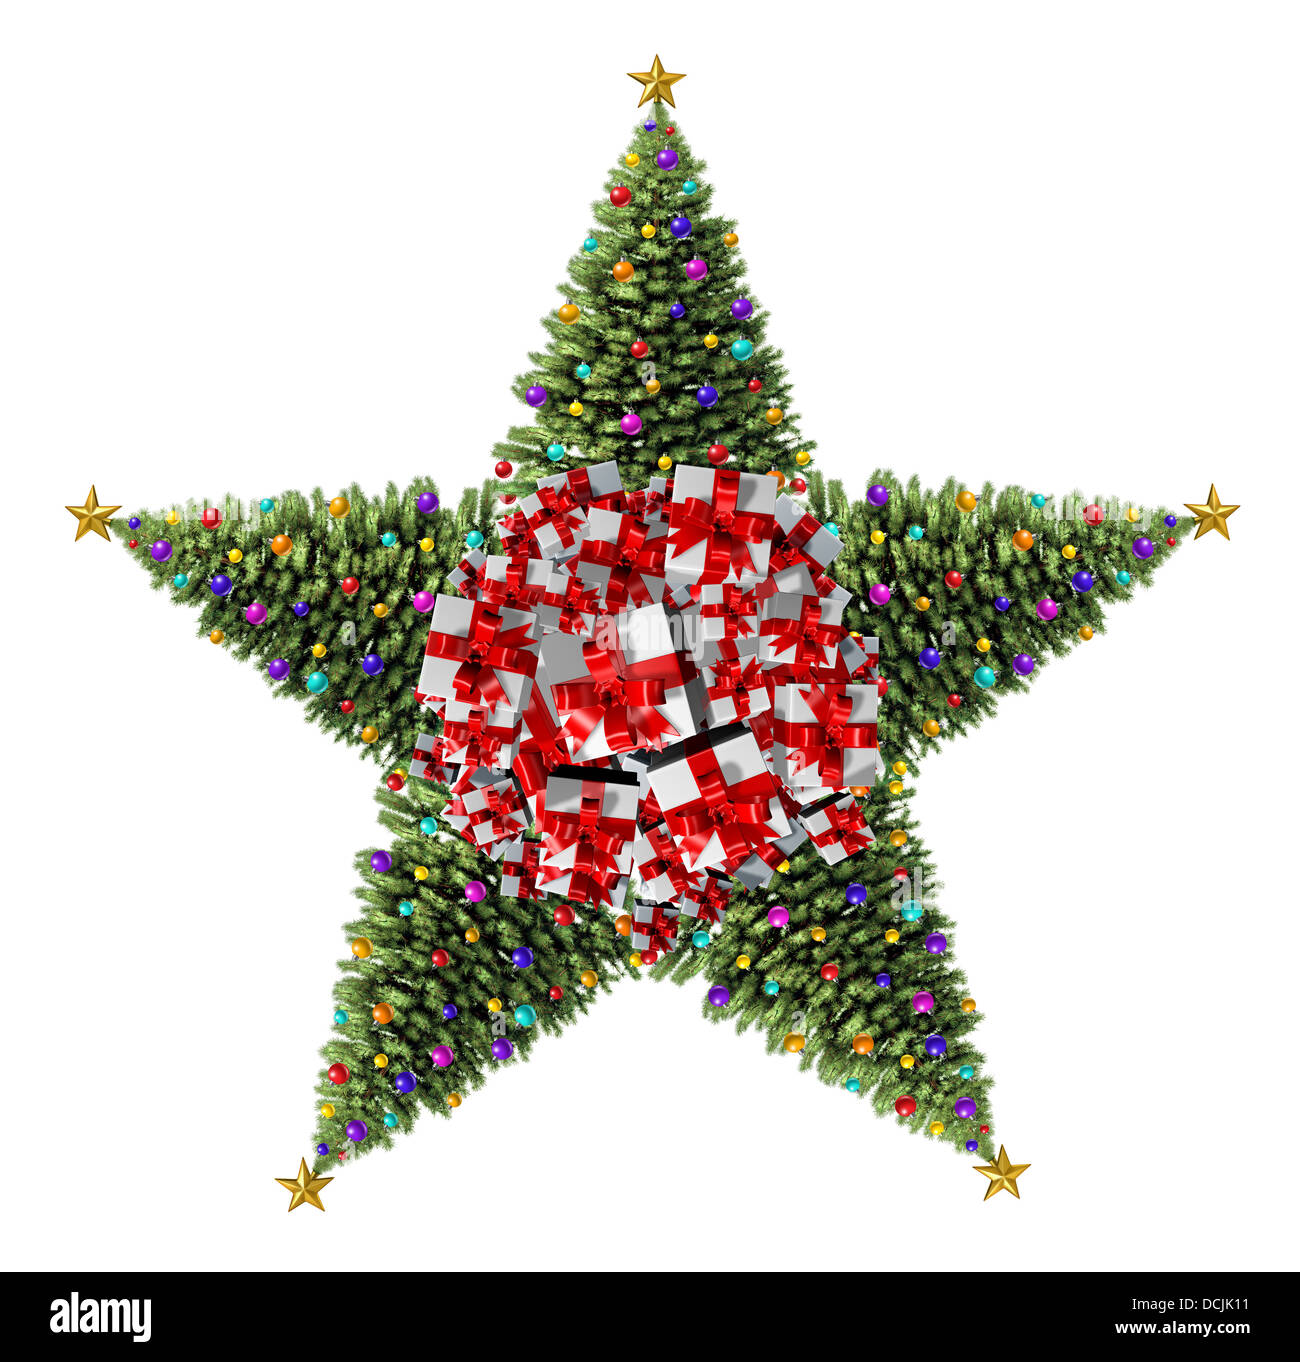 Weihnachtsbaum Sterne Konzept als eine Gruppe von geschmückten Weihnachtsbäume mit natürlichen grünen Pinien und reich verzierte Deko-Kugeln und Geschenke mit roten Bändern und Schleifen als saisonale Symbol winterfest und festlichen Silvester auf einem weißen Hintergrund. Stockfoto